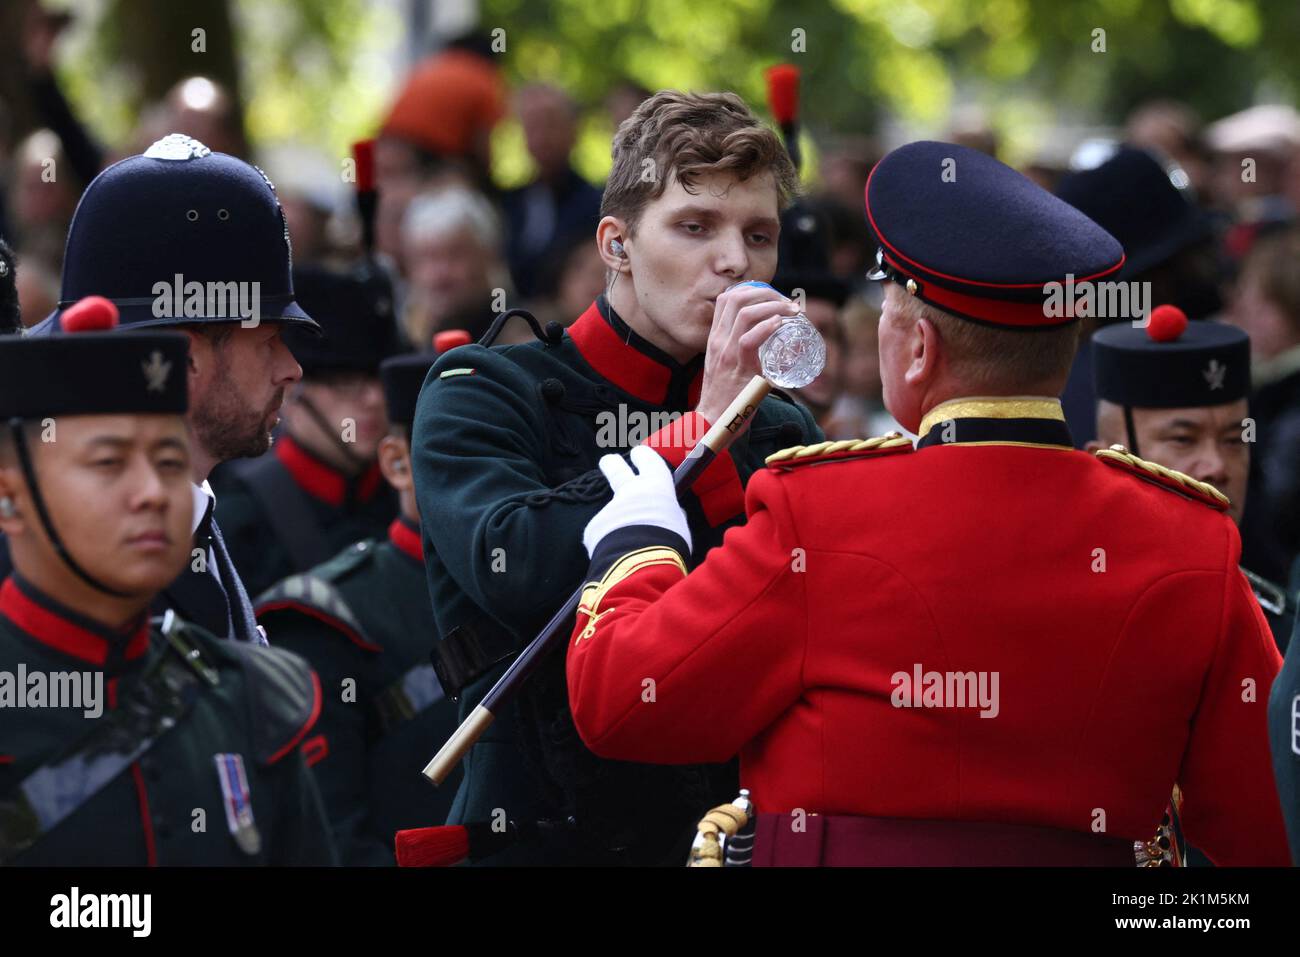 Ein Mitglied der Band trinkt Wasser, nachdem es am Tag der staatlichen Beerdigung und Beerdigung der britischen Königin Elizabeth in London, Großbritannien, am 19. September 2022 medizinische Hilfe erhalten hat. REUTERS/Tom Nicholson Stockfoto